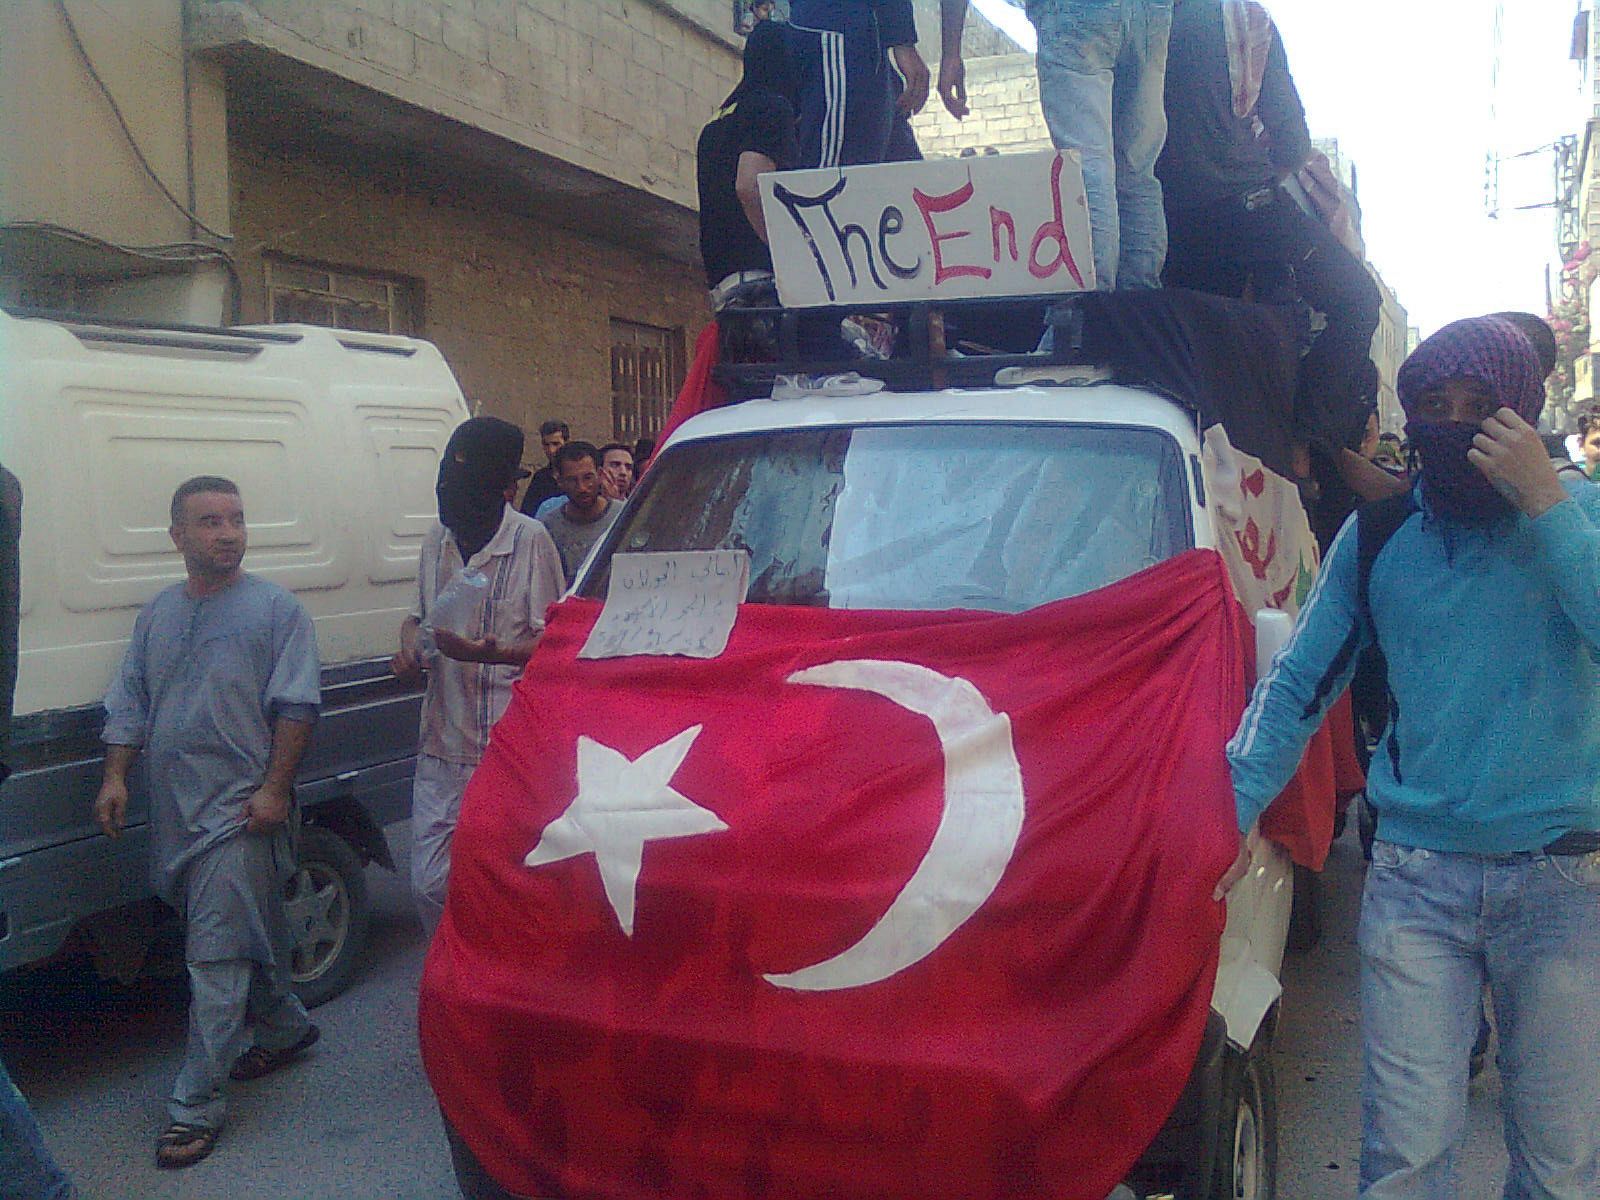 Los manifestantes exhiben una bandera turca y un cartel que anuncia "El final" del régimen sirio en Hajar Al Asswad, Damasco